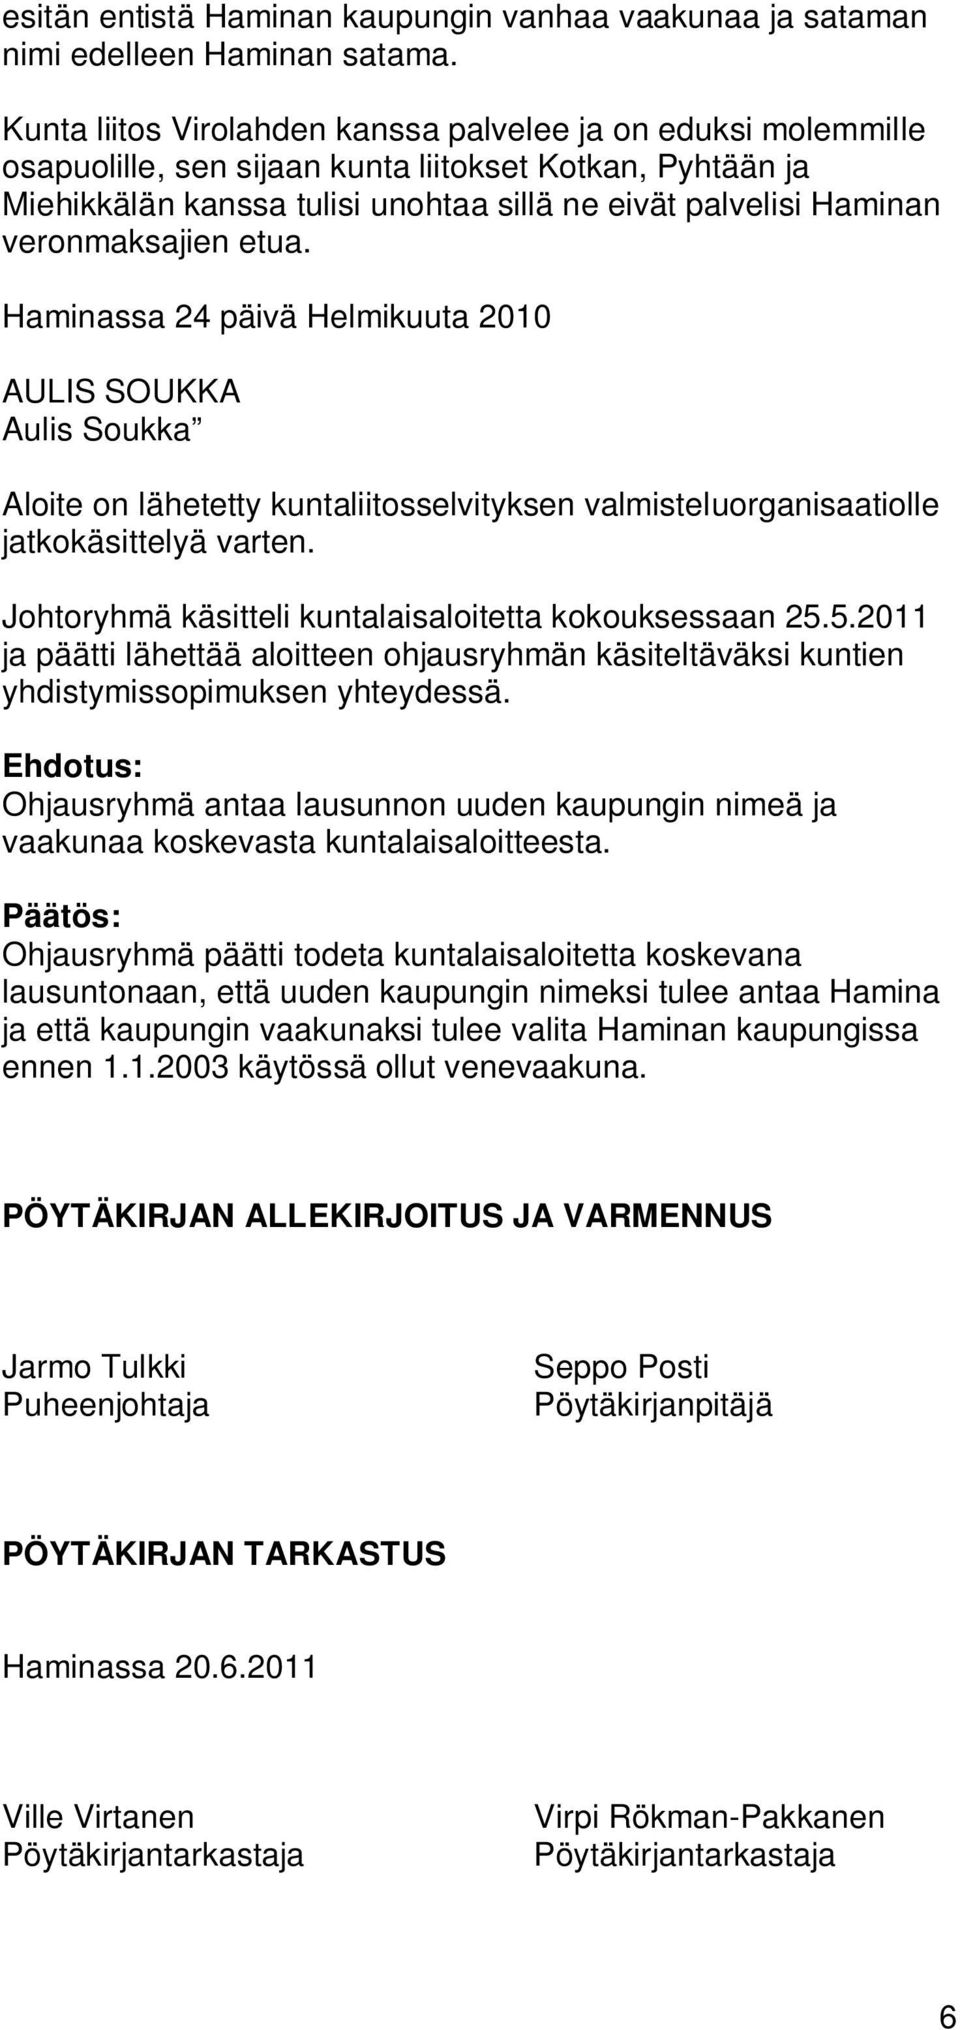 veronmaksajien etua. Haminassa 24 päivä Helmikuuta 2010 AULIS SOUKKA Aulis Soukka Aloite on lähetetty kuntaliitosselvityksen valmisteluorganisaatiolle jatkokäsittelyä varten.